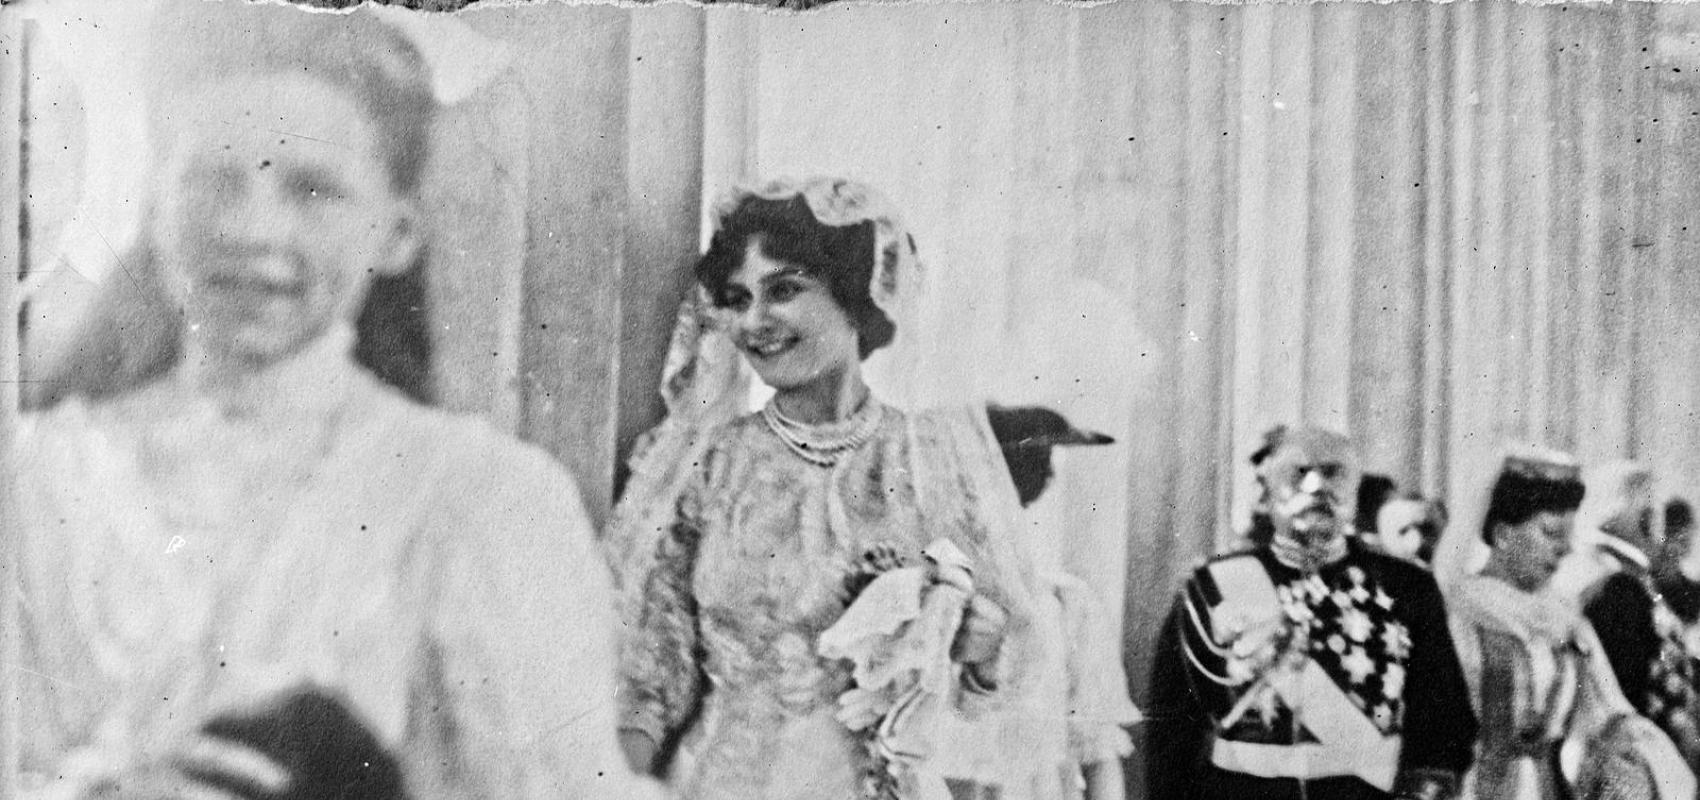 Marie Bonaparte au Mariage du roi de Grèce à Athènes - 12 décembre 1907 - BnF, département des Estampes et de la photographie